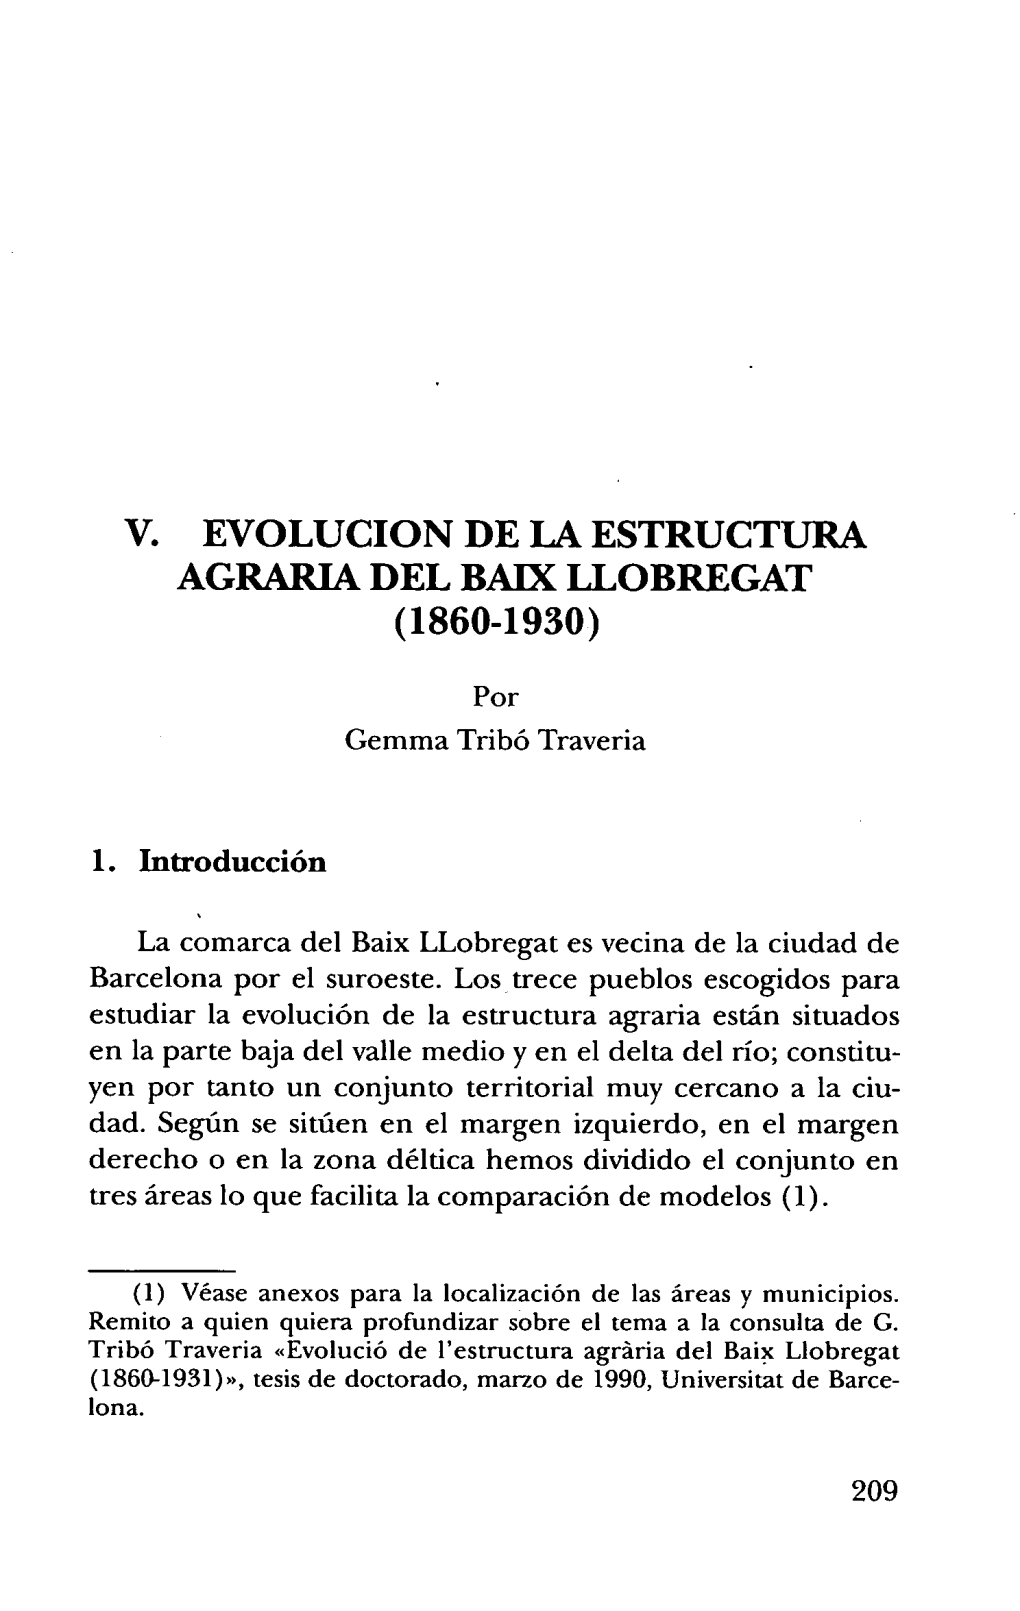 V. Evolucion De La Estructura Agraria Del Baix Llobregat (1860-1930 )